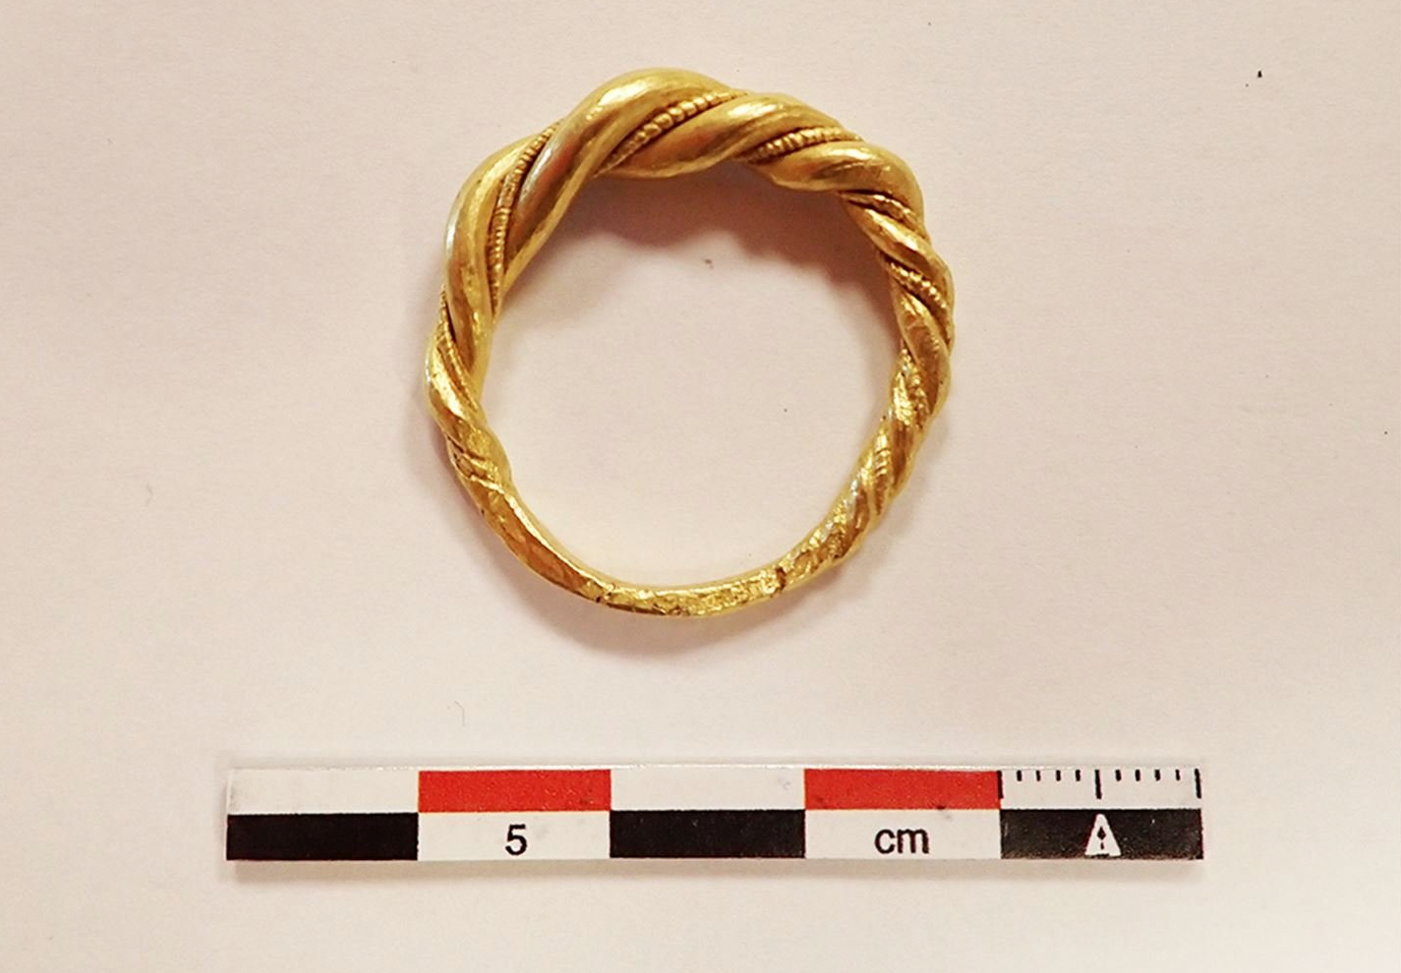 Norvège - L'anneau en or de l'Âge Viking acheté sur un site en ligne de vente aux enchères - Photo: Municipalité du comté de Vestland